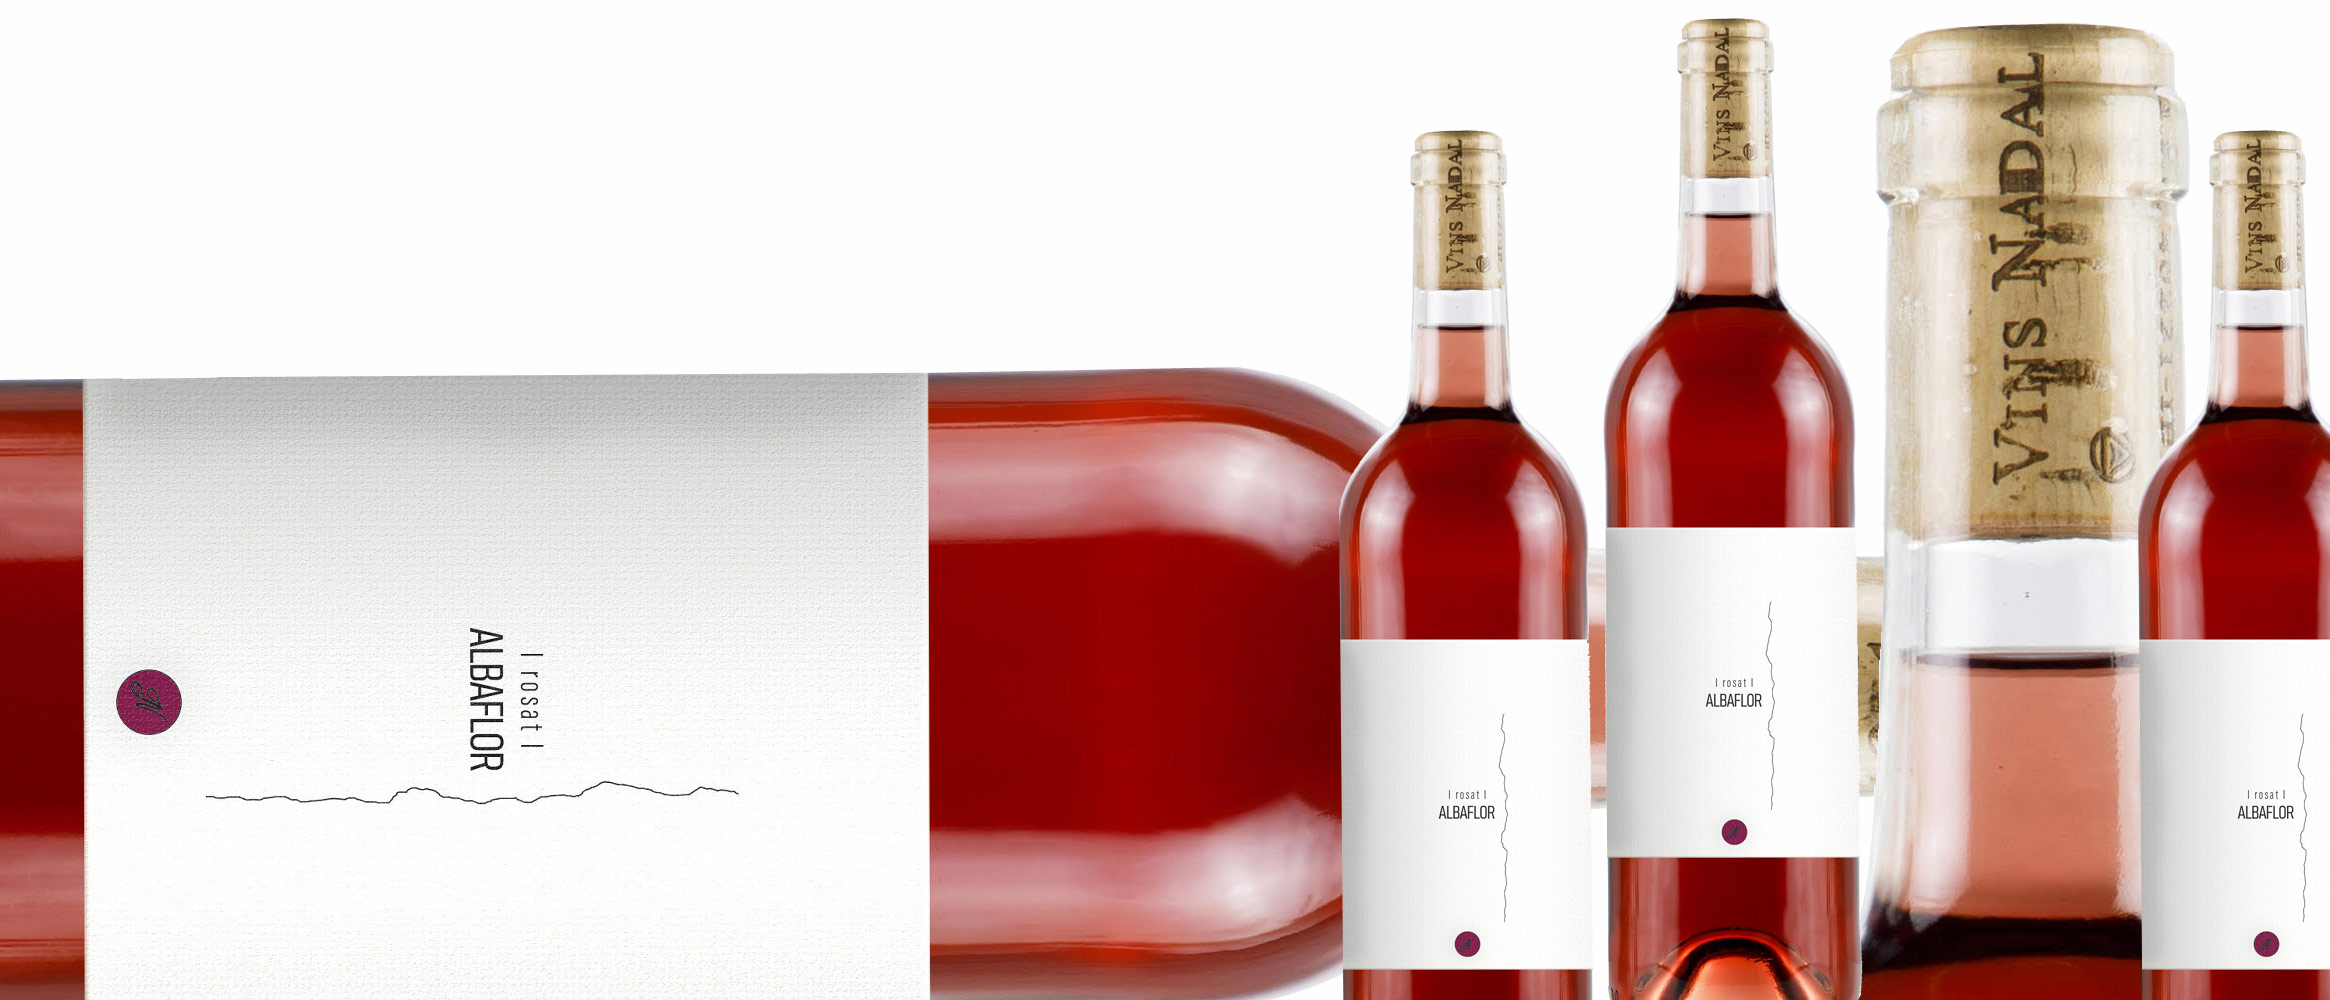 6 x Nadal Albaflor rosé wine D.O. Binissalem